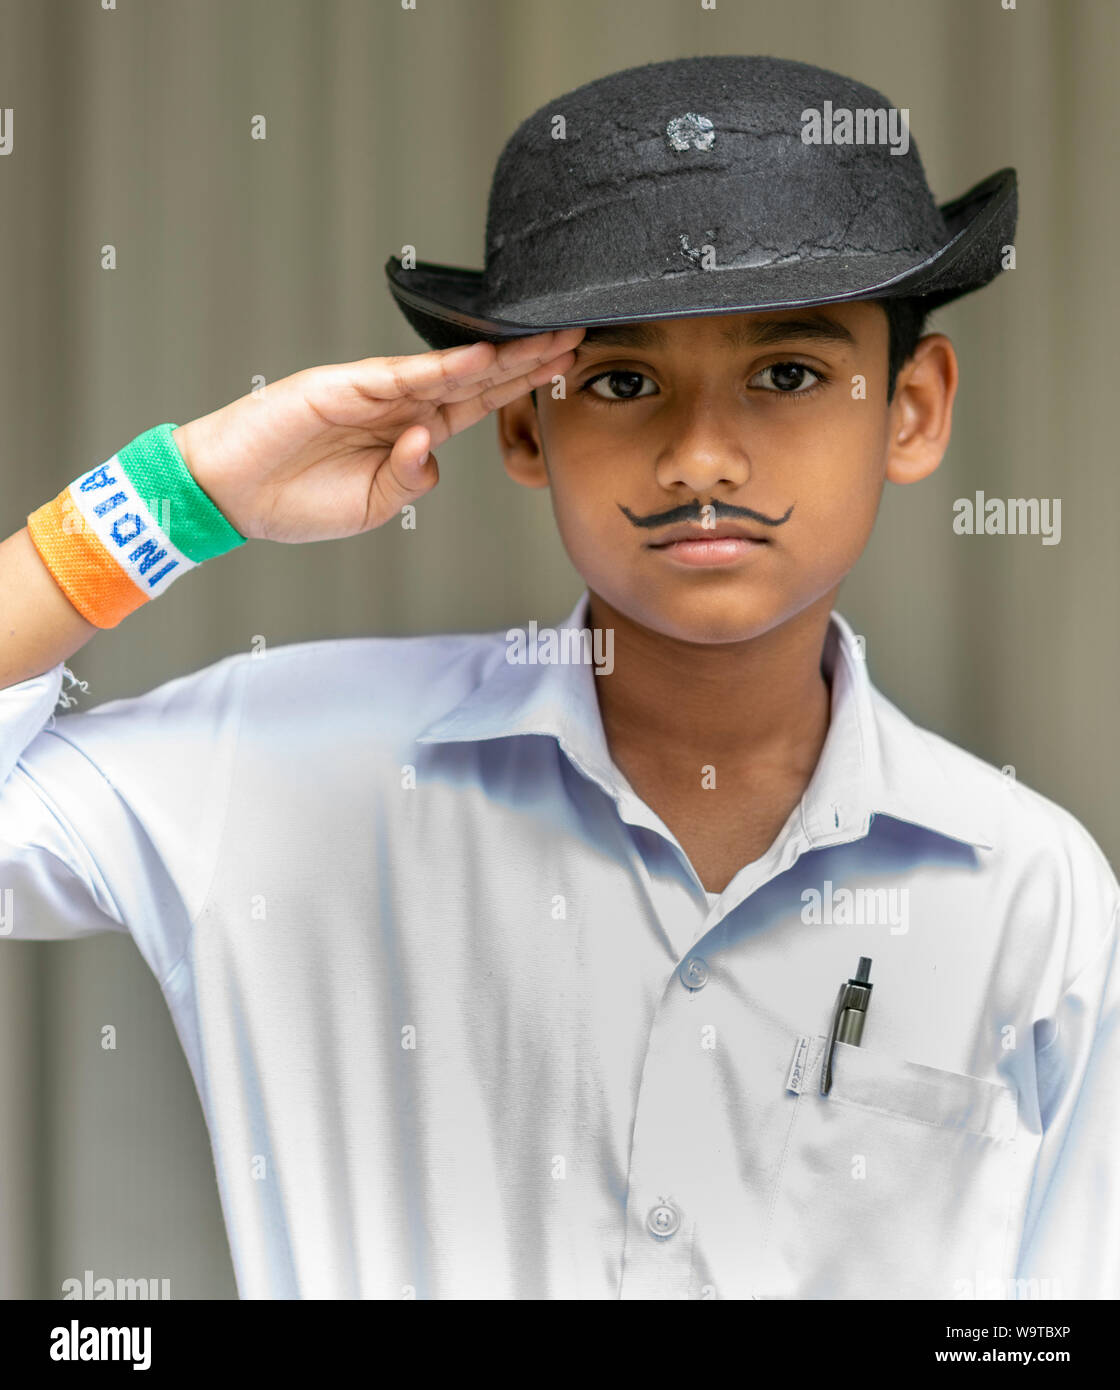 Ein 9 Jahre alter indischer Junge verkleidet als Shaheed Bhagat Singh anlässlich der Unabhängigkeit Indiens Tag, 15 August, 2019. Stockfoto